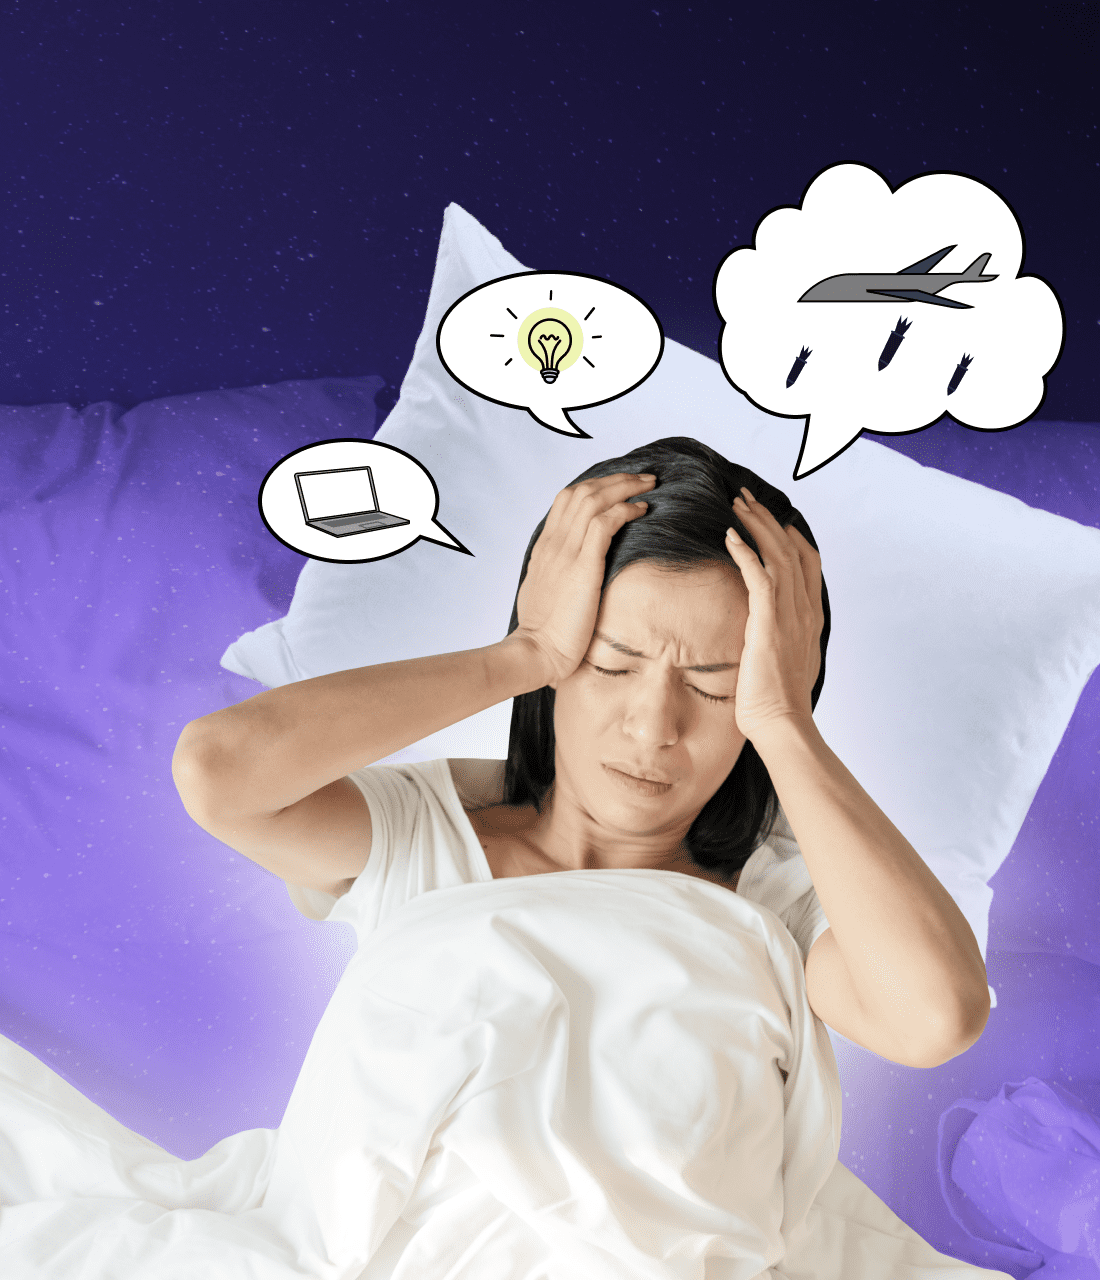 Про що думаєш перед сном, так і спиш: вчені пояснили зв’язок думок надвечір з якістю відпочинку вночі